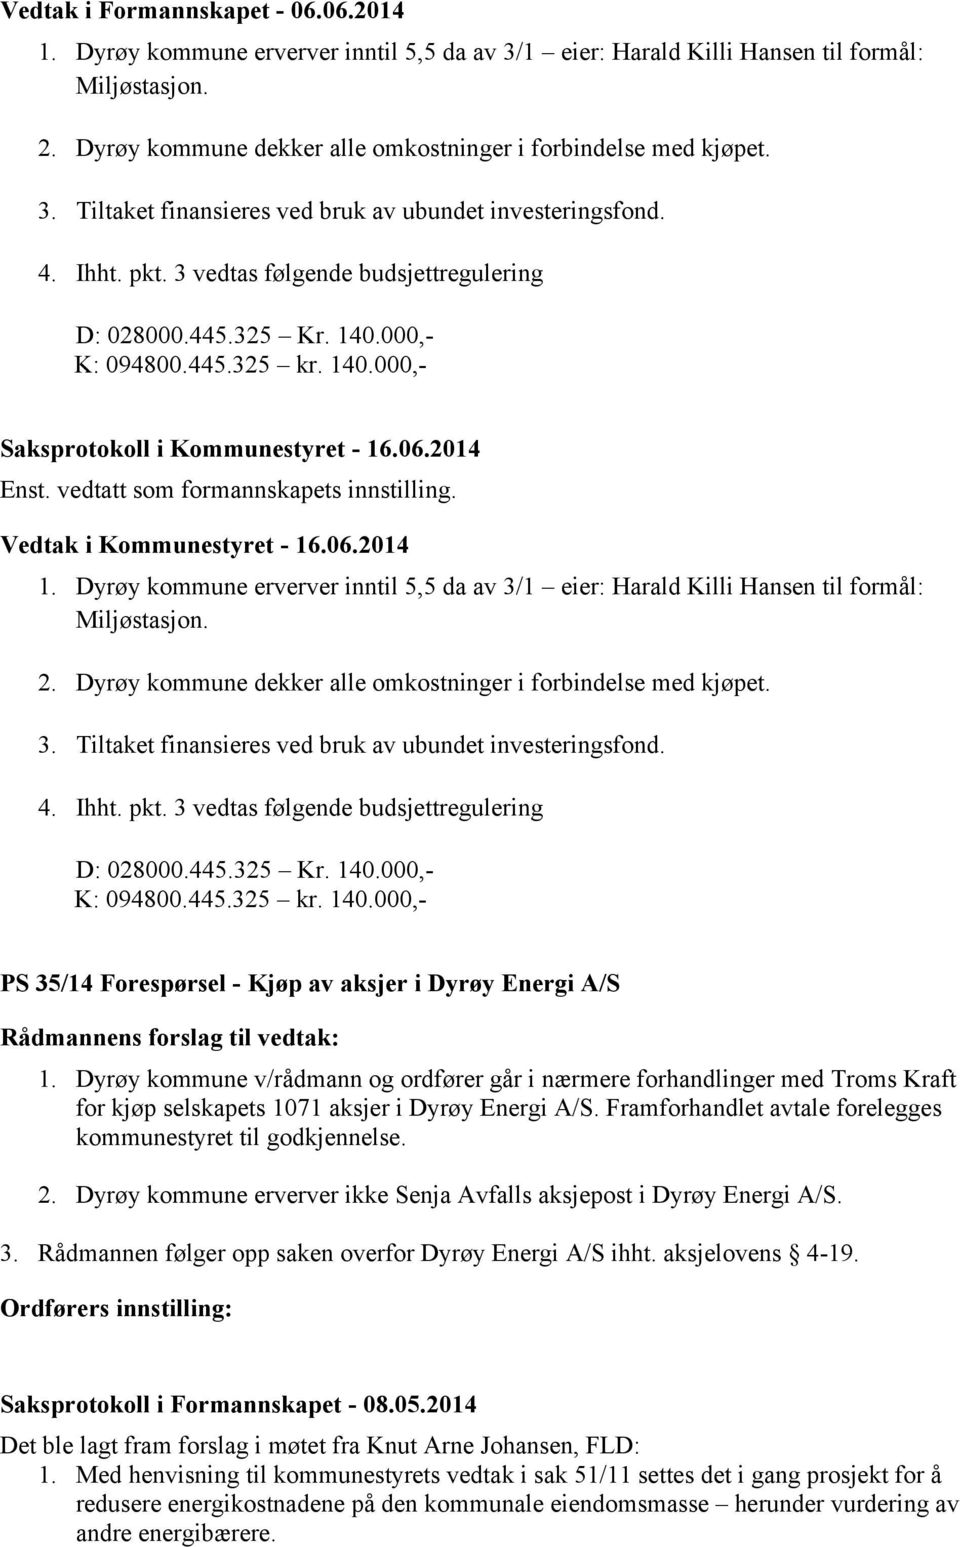 140.000,- K: 094800.445.325 kr. 140.000,- Enst. vedtatt som formannskapets innstilling. 1. Dyrøy kommune erverver inntil 5,5 da av 3/1 eier: Harald Killi Hansen til formål: Miljøstasjon. 2.  140.